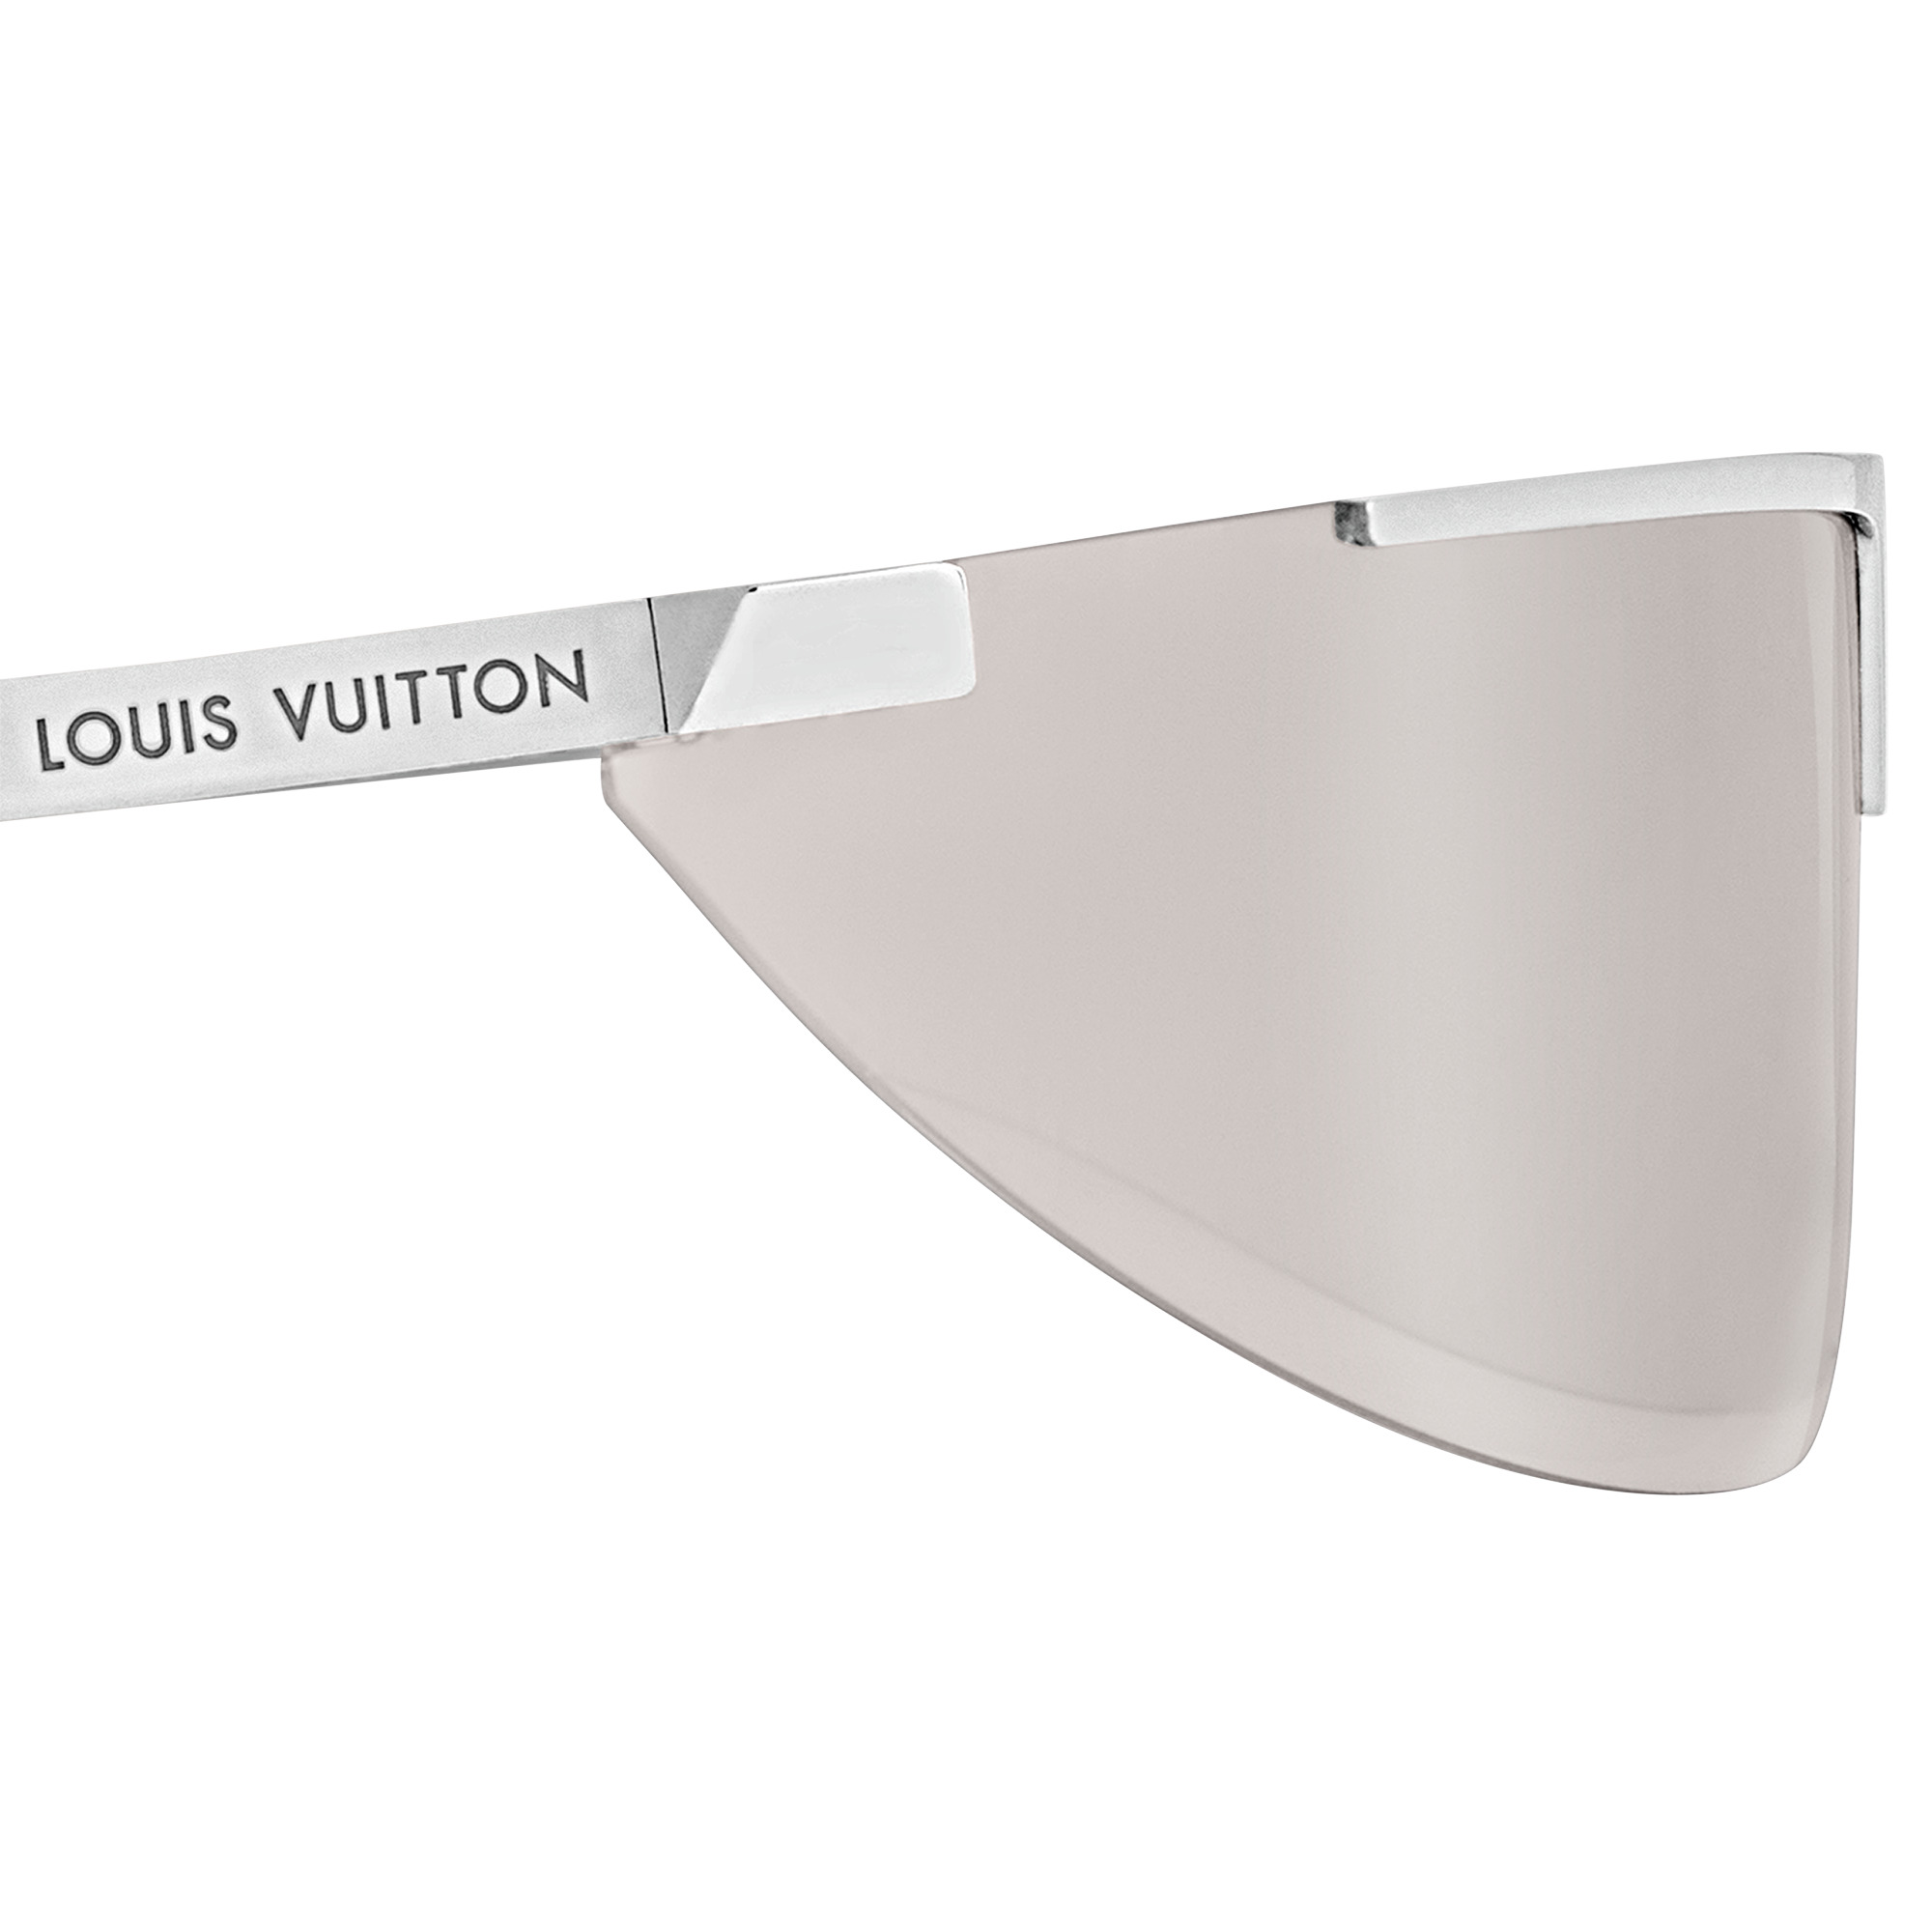 Louis Vuitton Louis Vuitton 1.1 EVIDENCE SUNGLASSES  Louis vuitton  sunglasses, Sunglasses, Luxury sunglasses